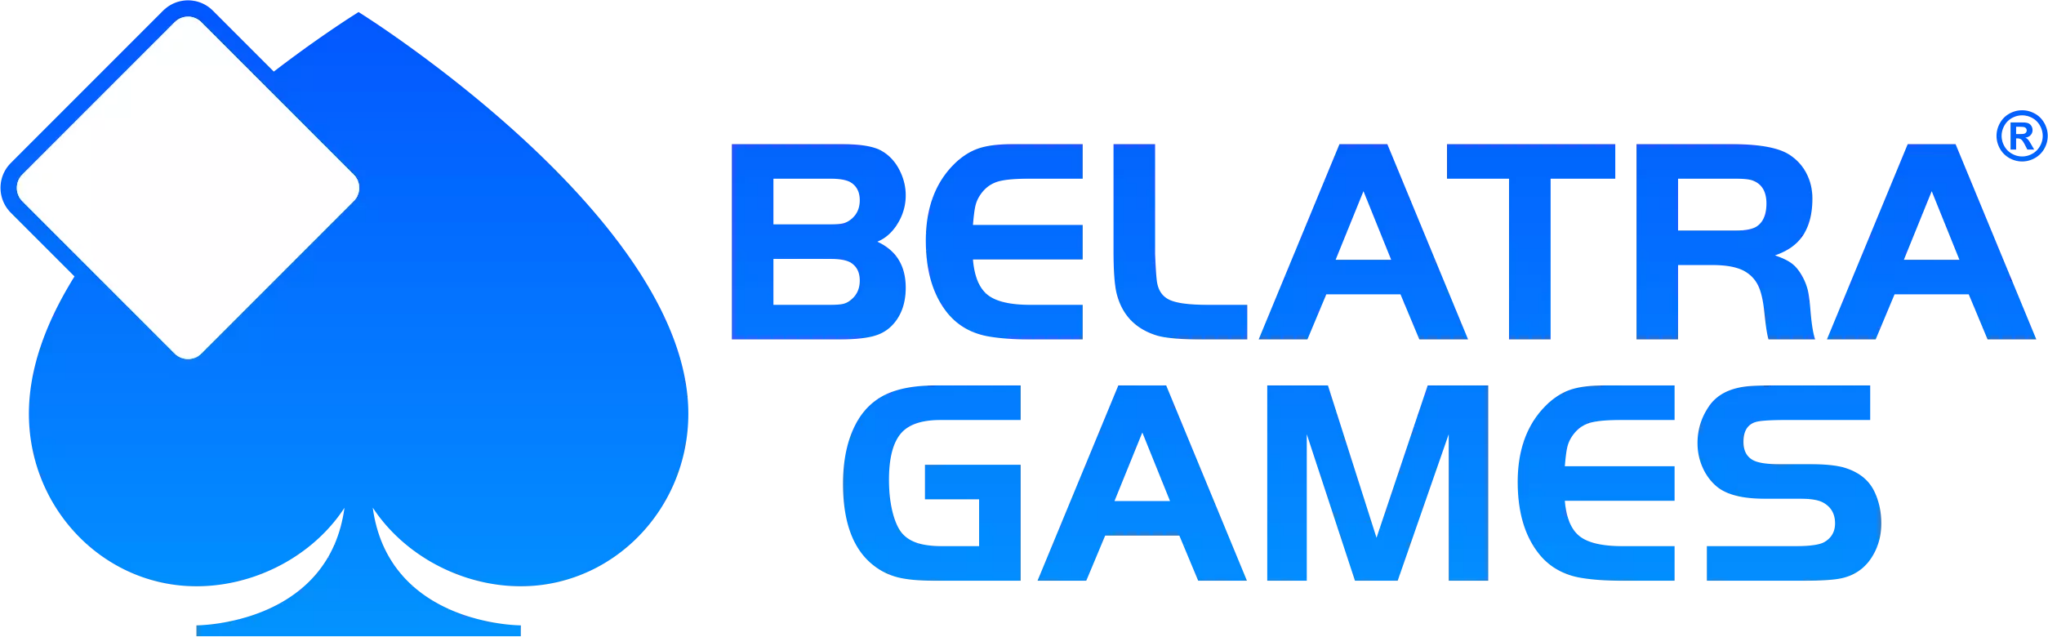 belatra-games-logo